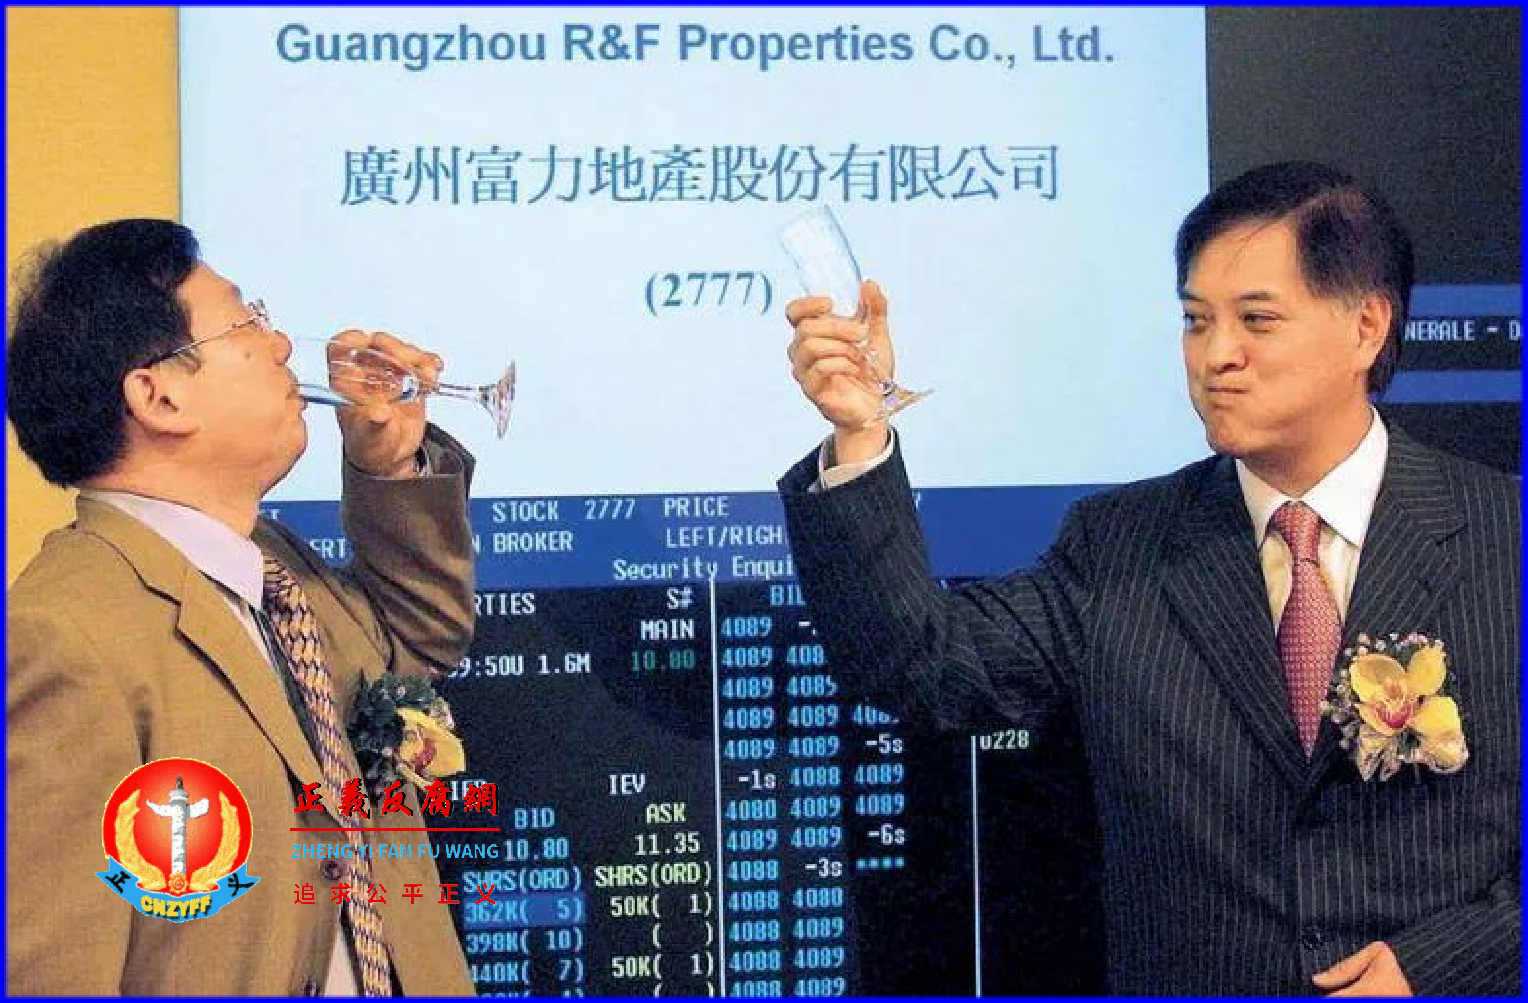 富力地产两位创始人张力、李思廉在2005年为公司在香港上市举杯庆贺.png